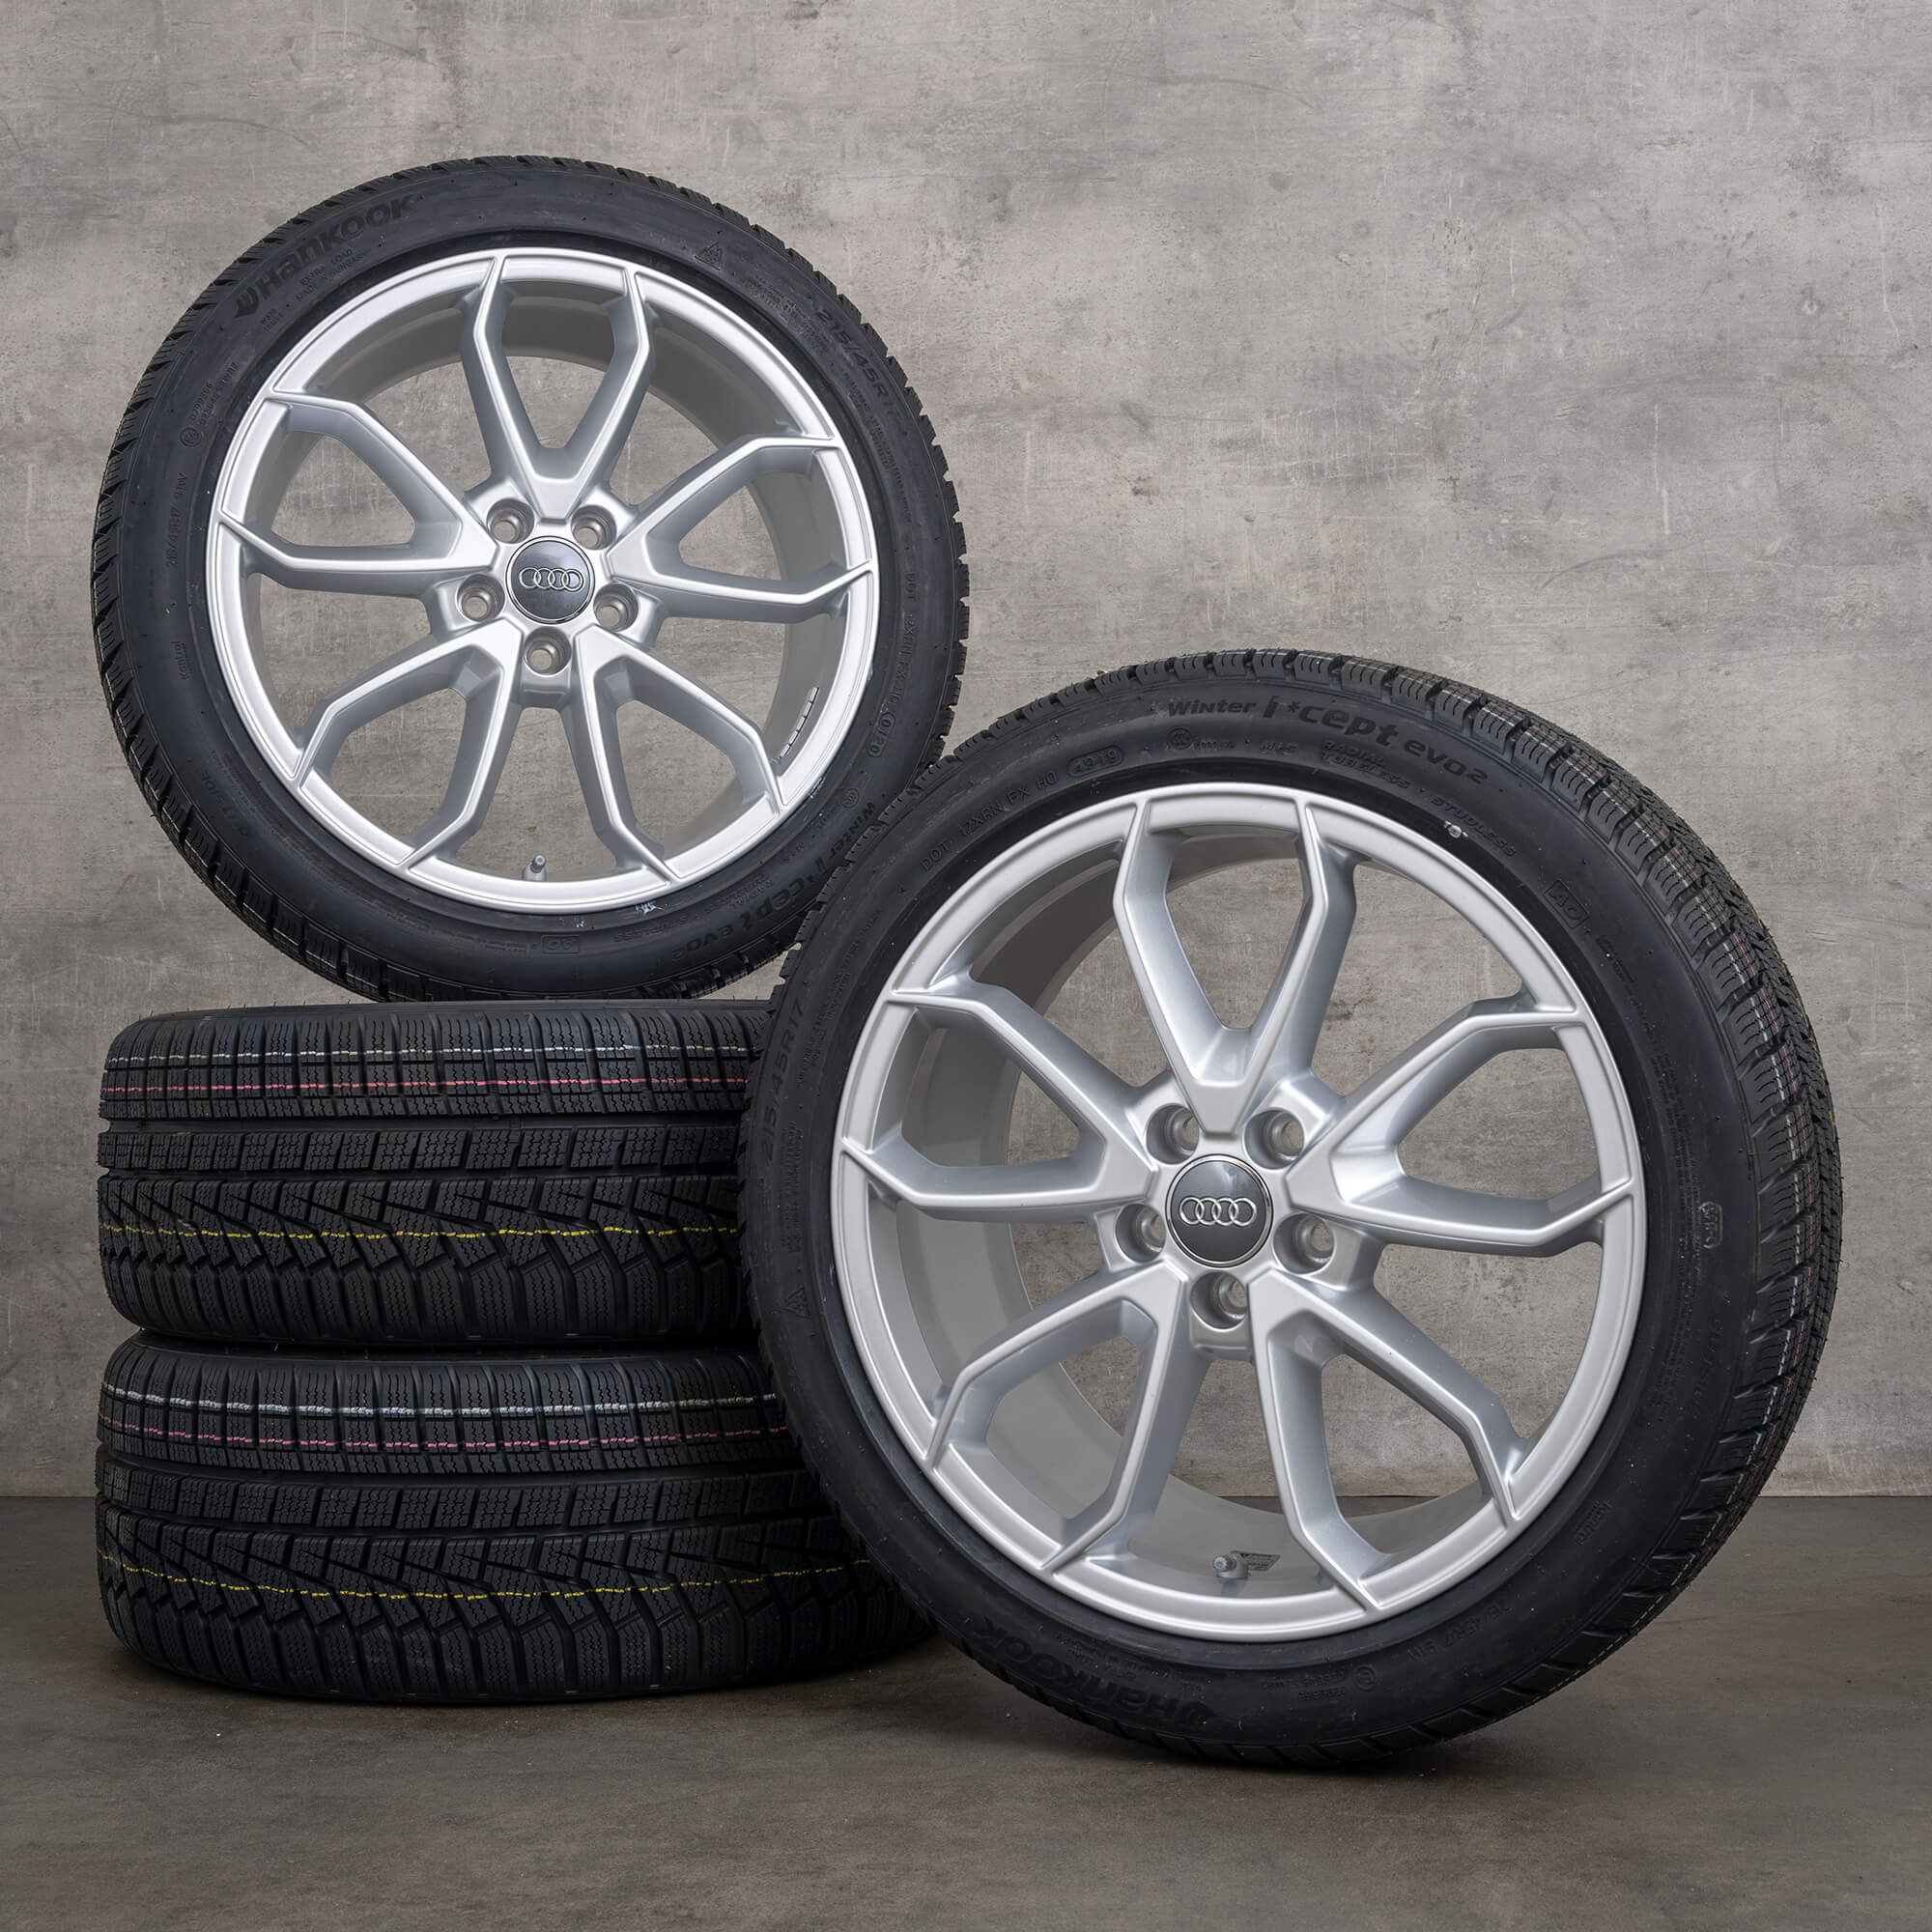 Audi A1 GB Carabus rodas de inverno pneus jantes 17 polegadas 82A071497A NOVO